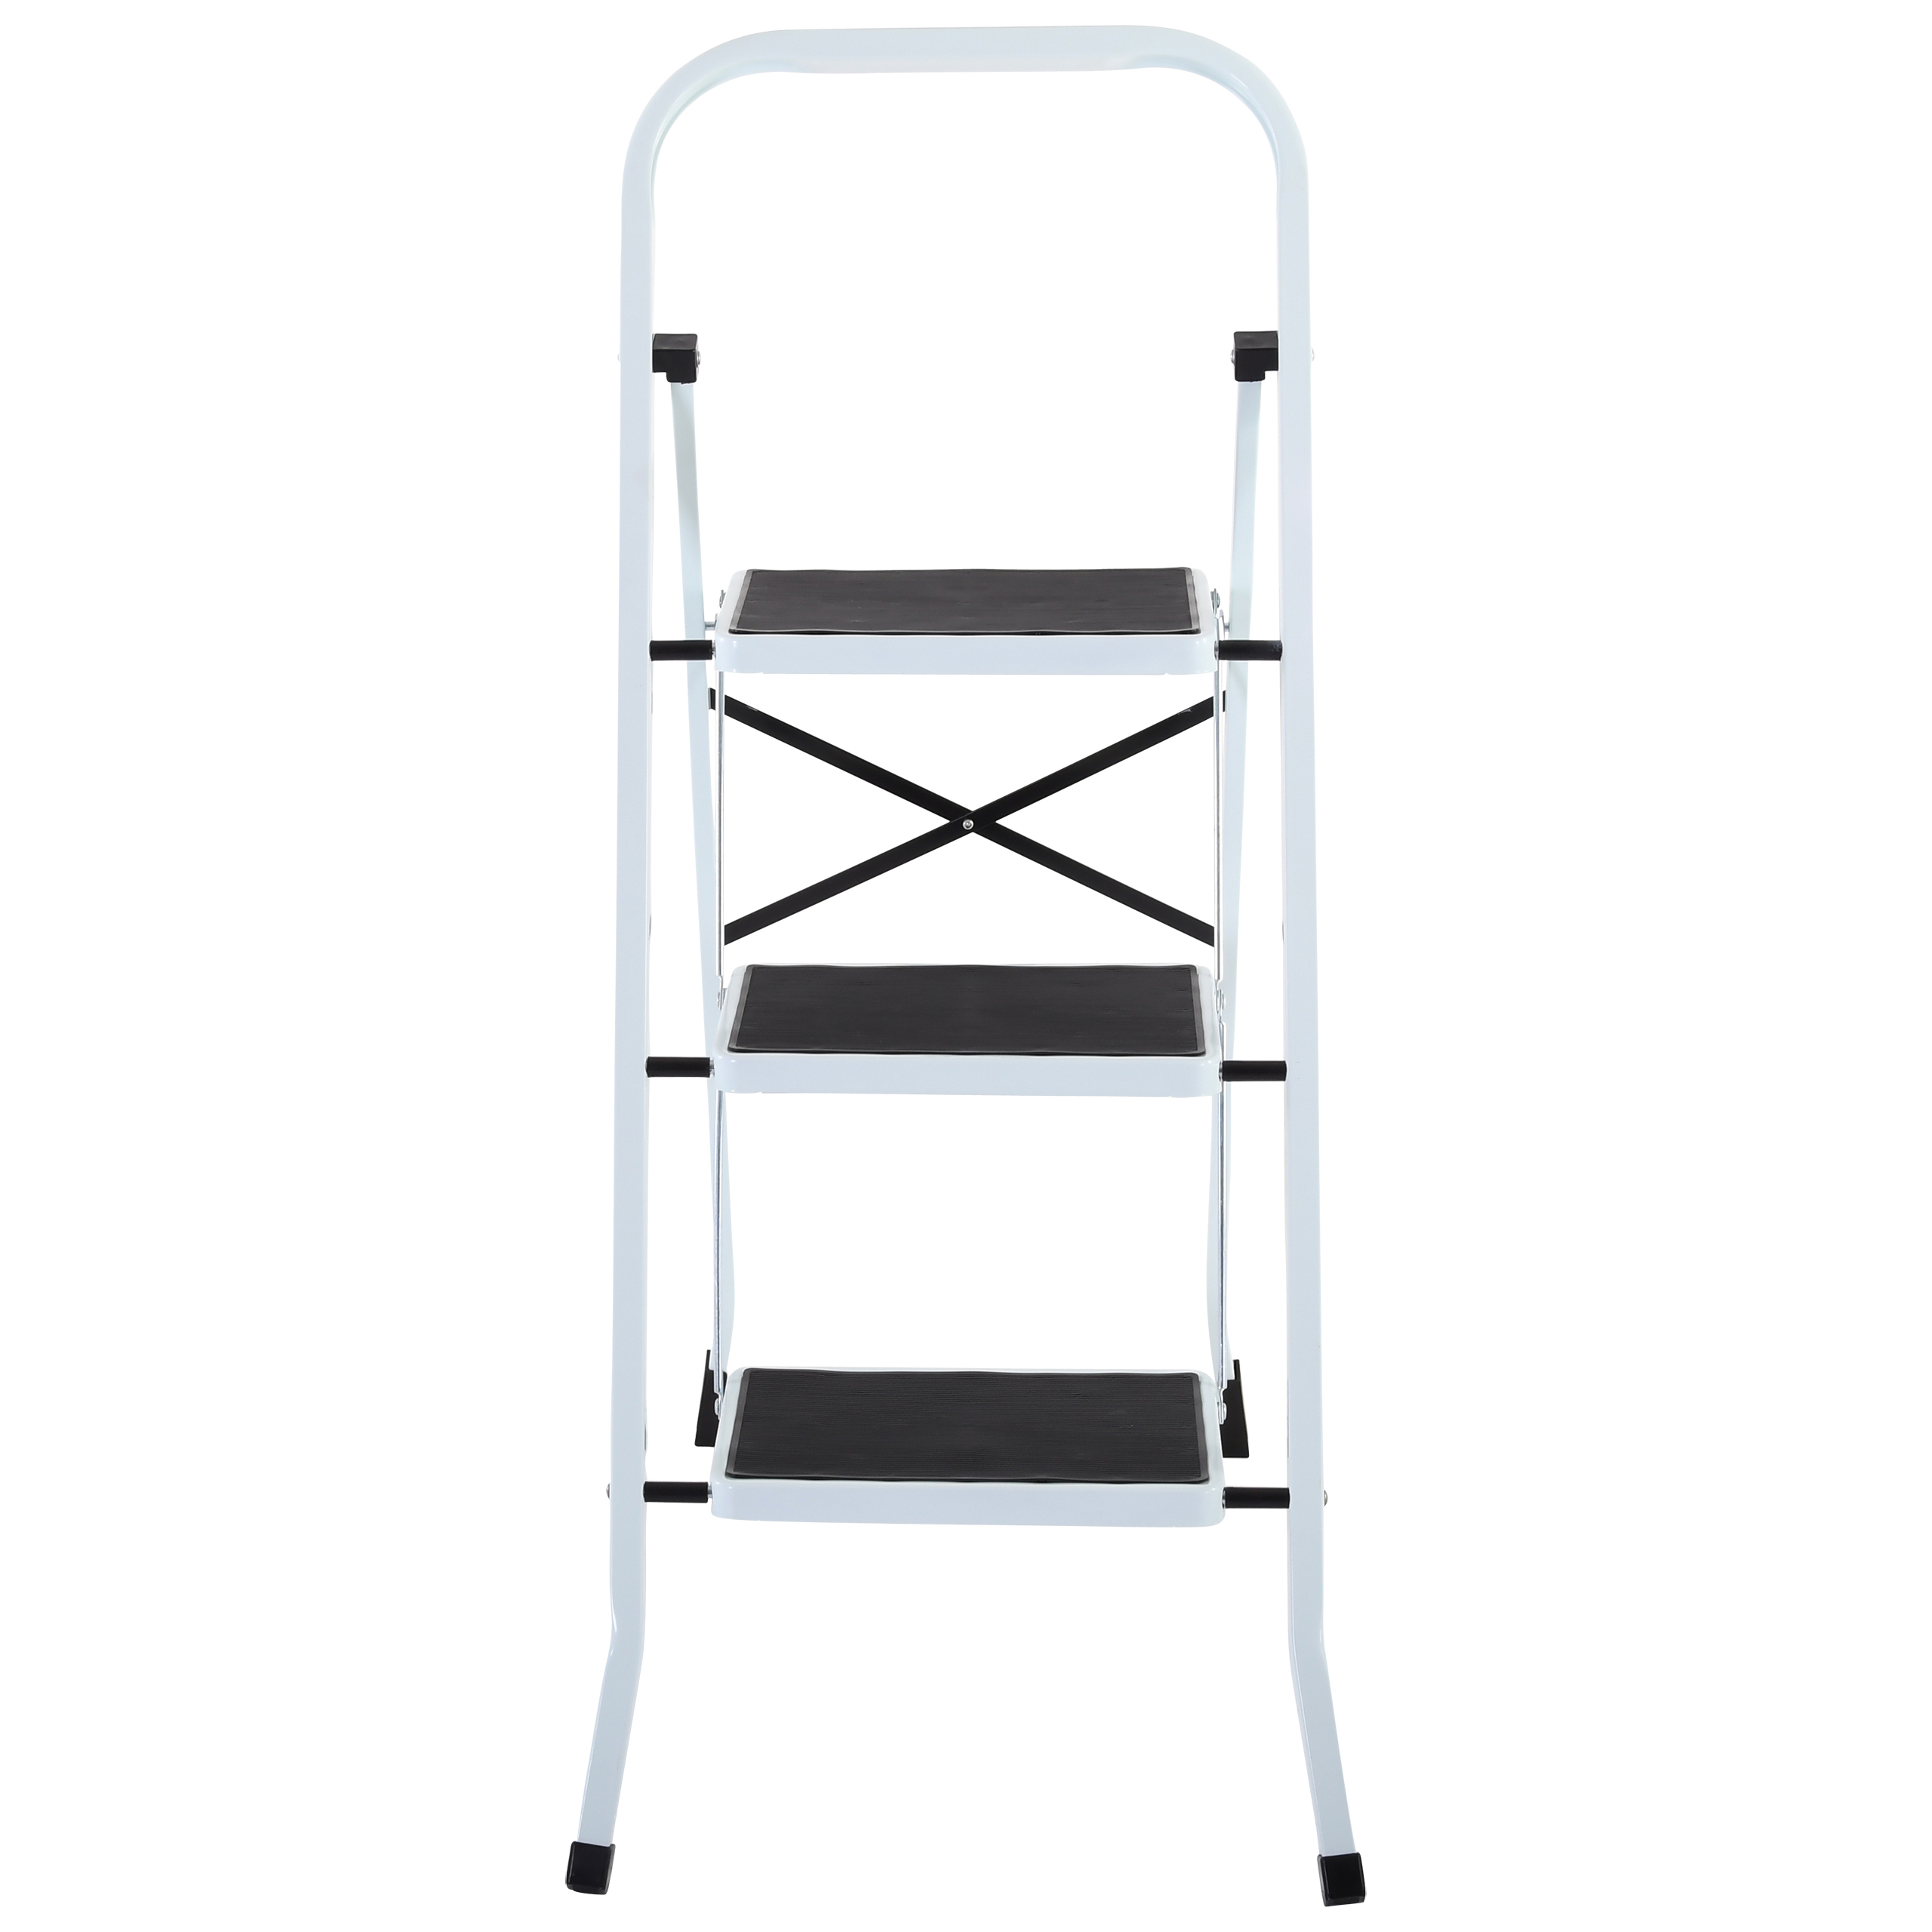 Raburg Stahl-Klapptritt-Leiter Step Medium, 3 Stufen, Stahl in Weiß, kompakt klappbar - 67,5 cm hoch